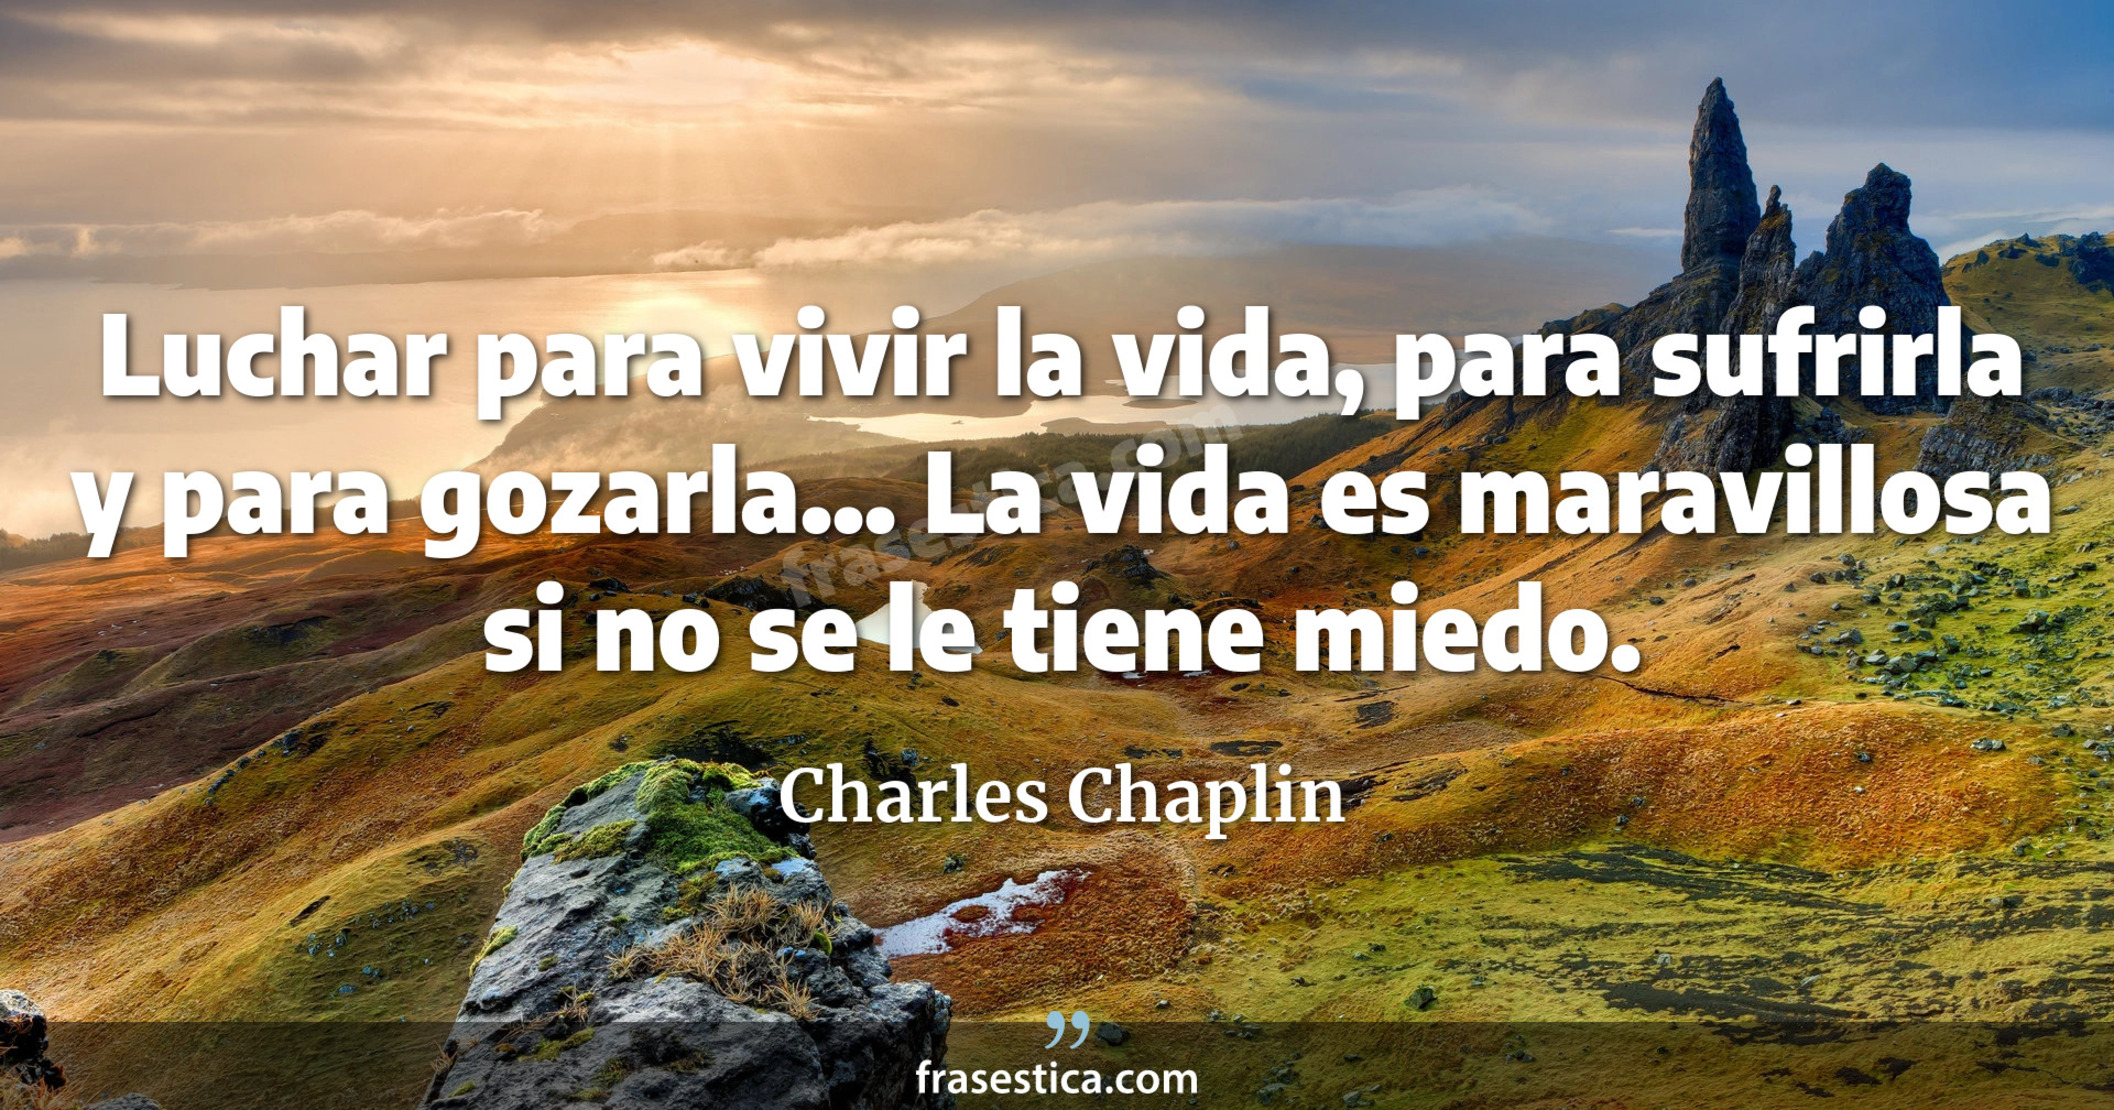 Luchar para vivir la vida, para sufrirla y para gozarla... La vida es maravillosa si no se le tiene miedo. - Charles Chaplin